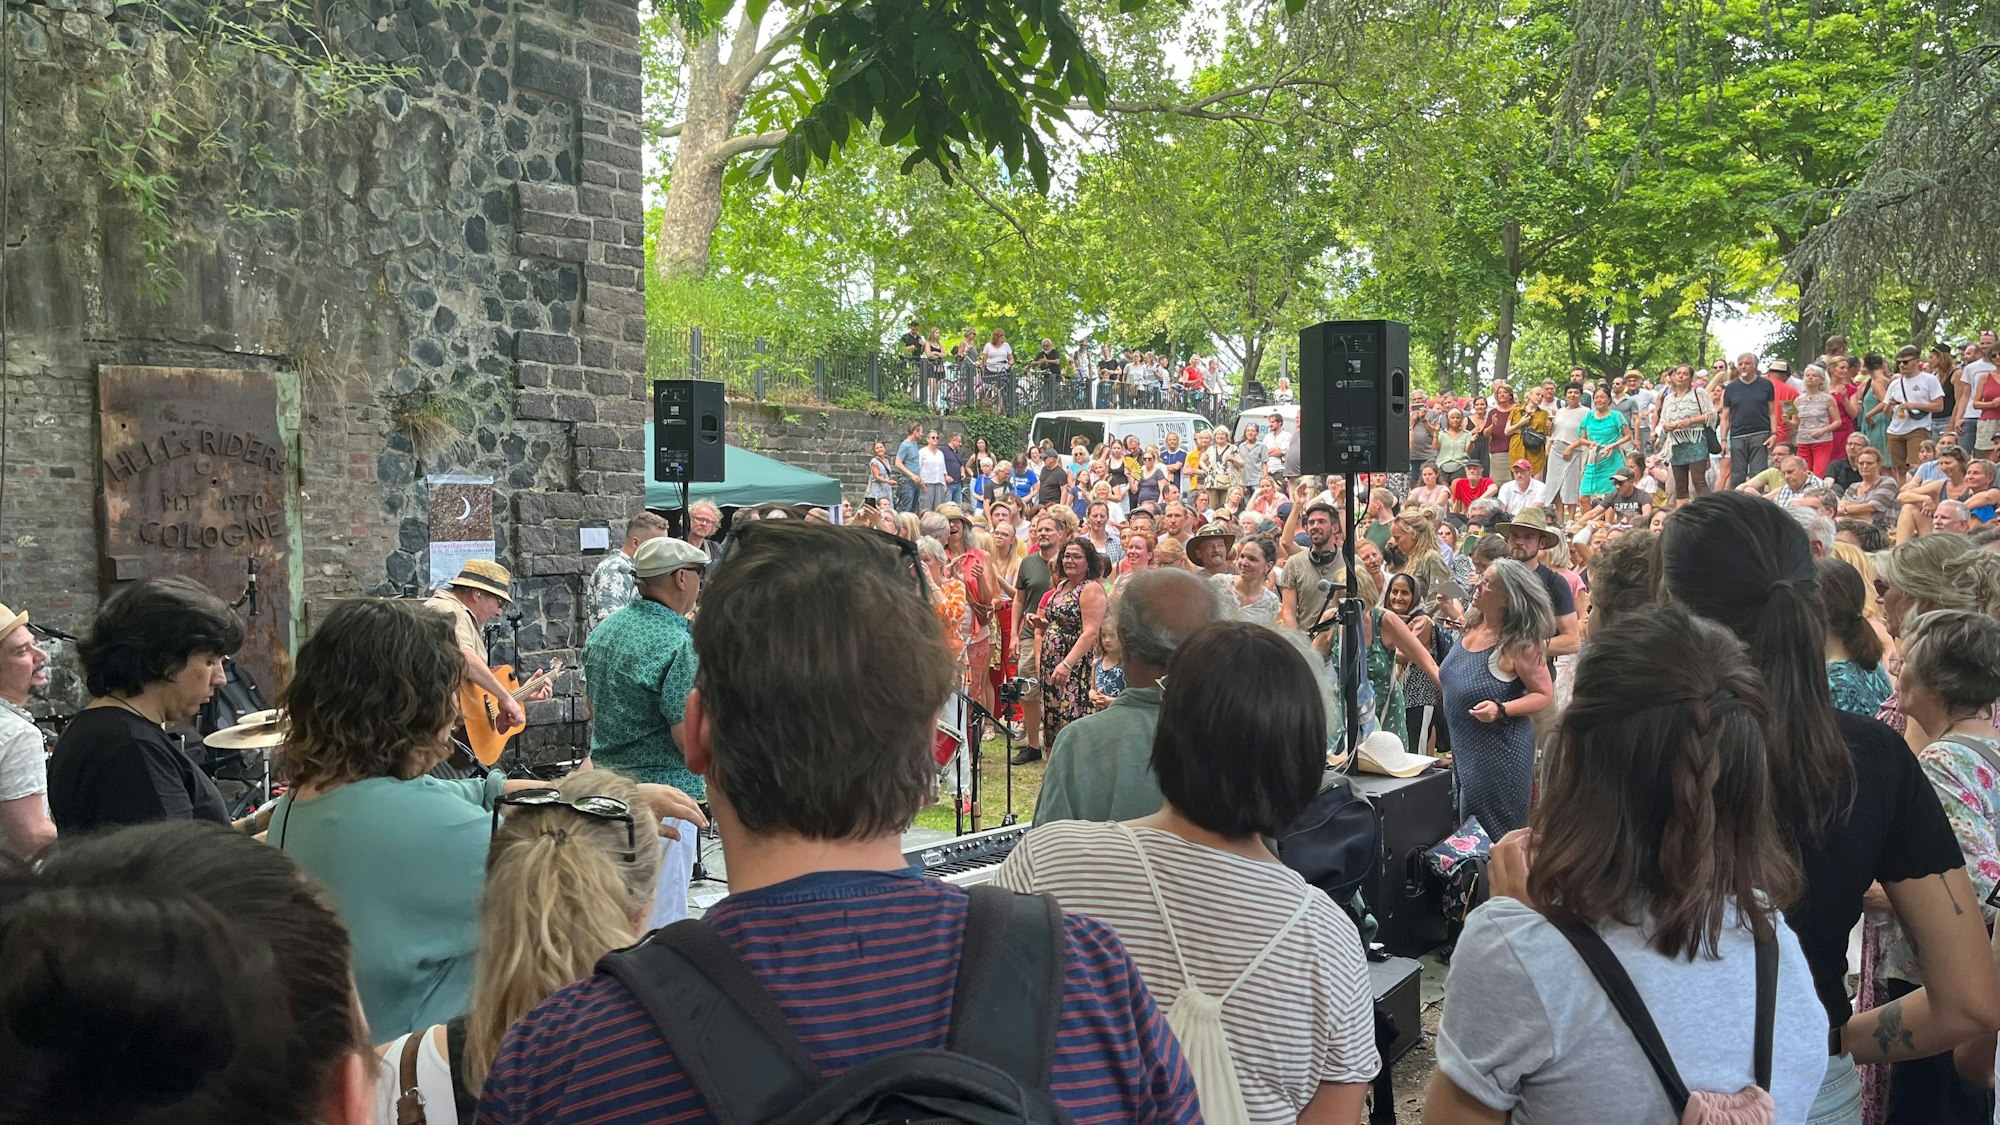 Viele Menschen stehen um eine Band in einem Park.